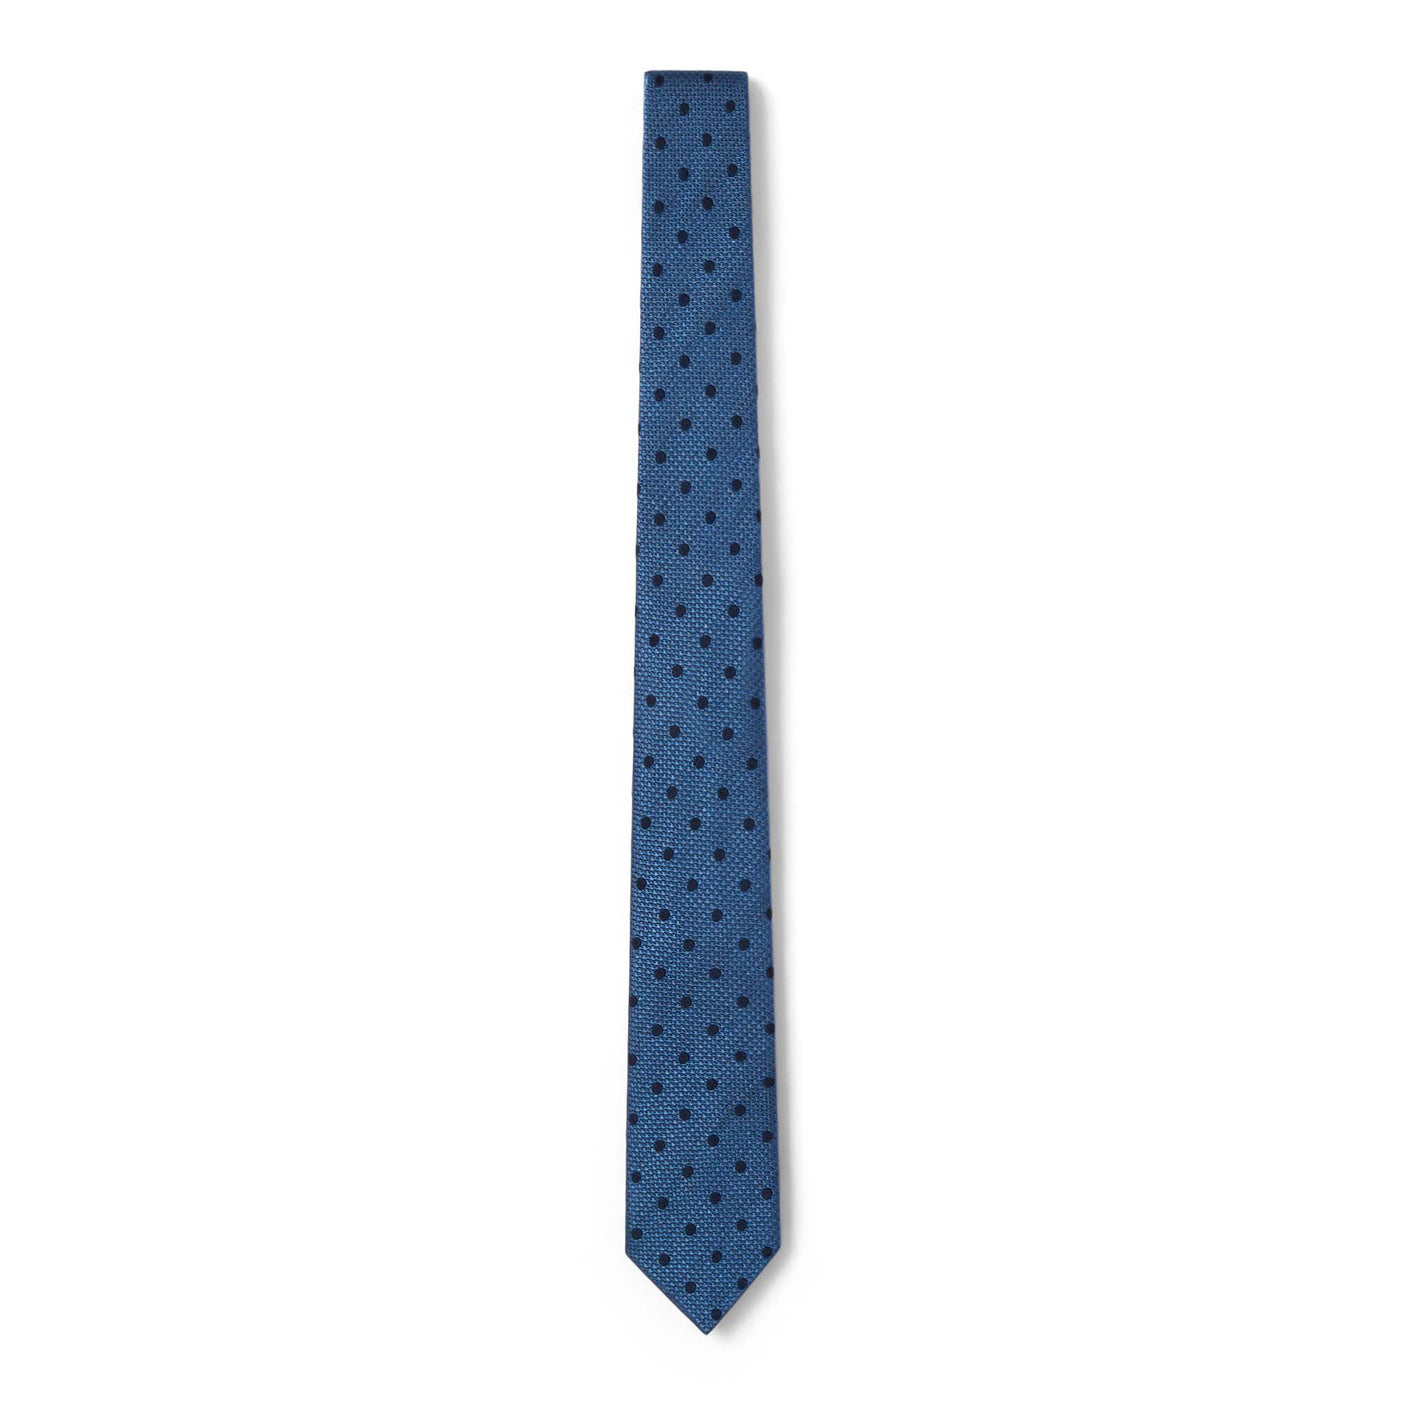 Cravate à pois bleu marine et bleu ciel